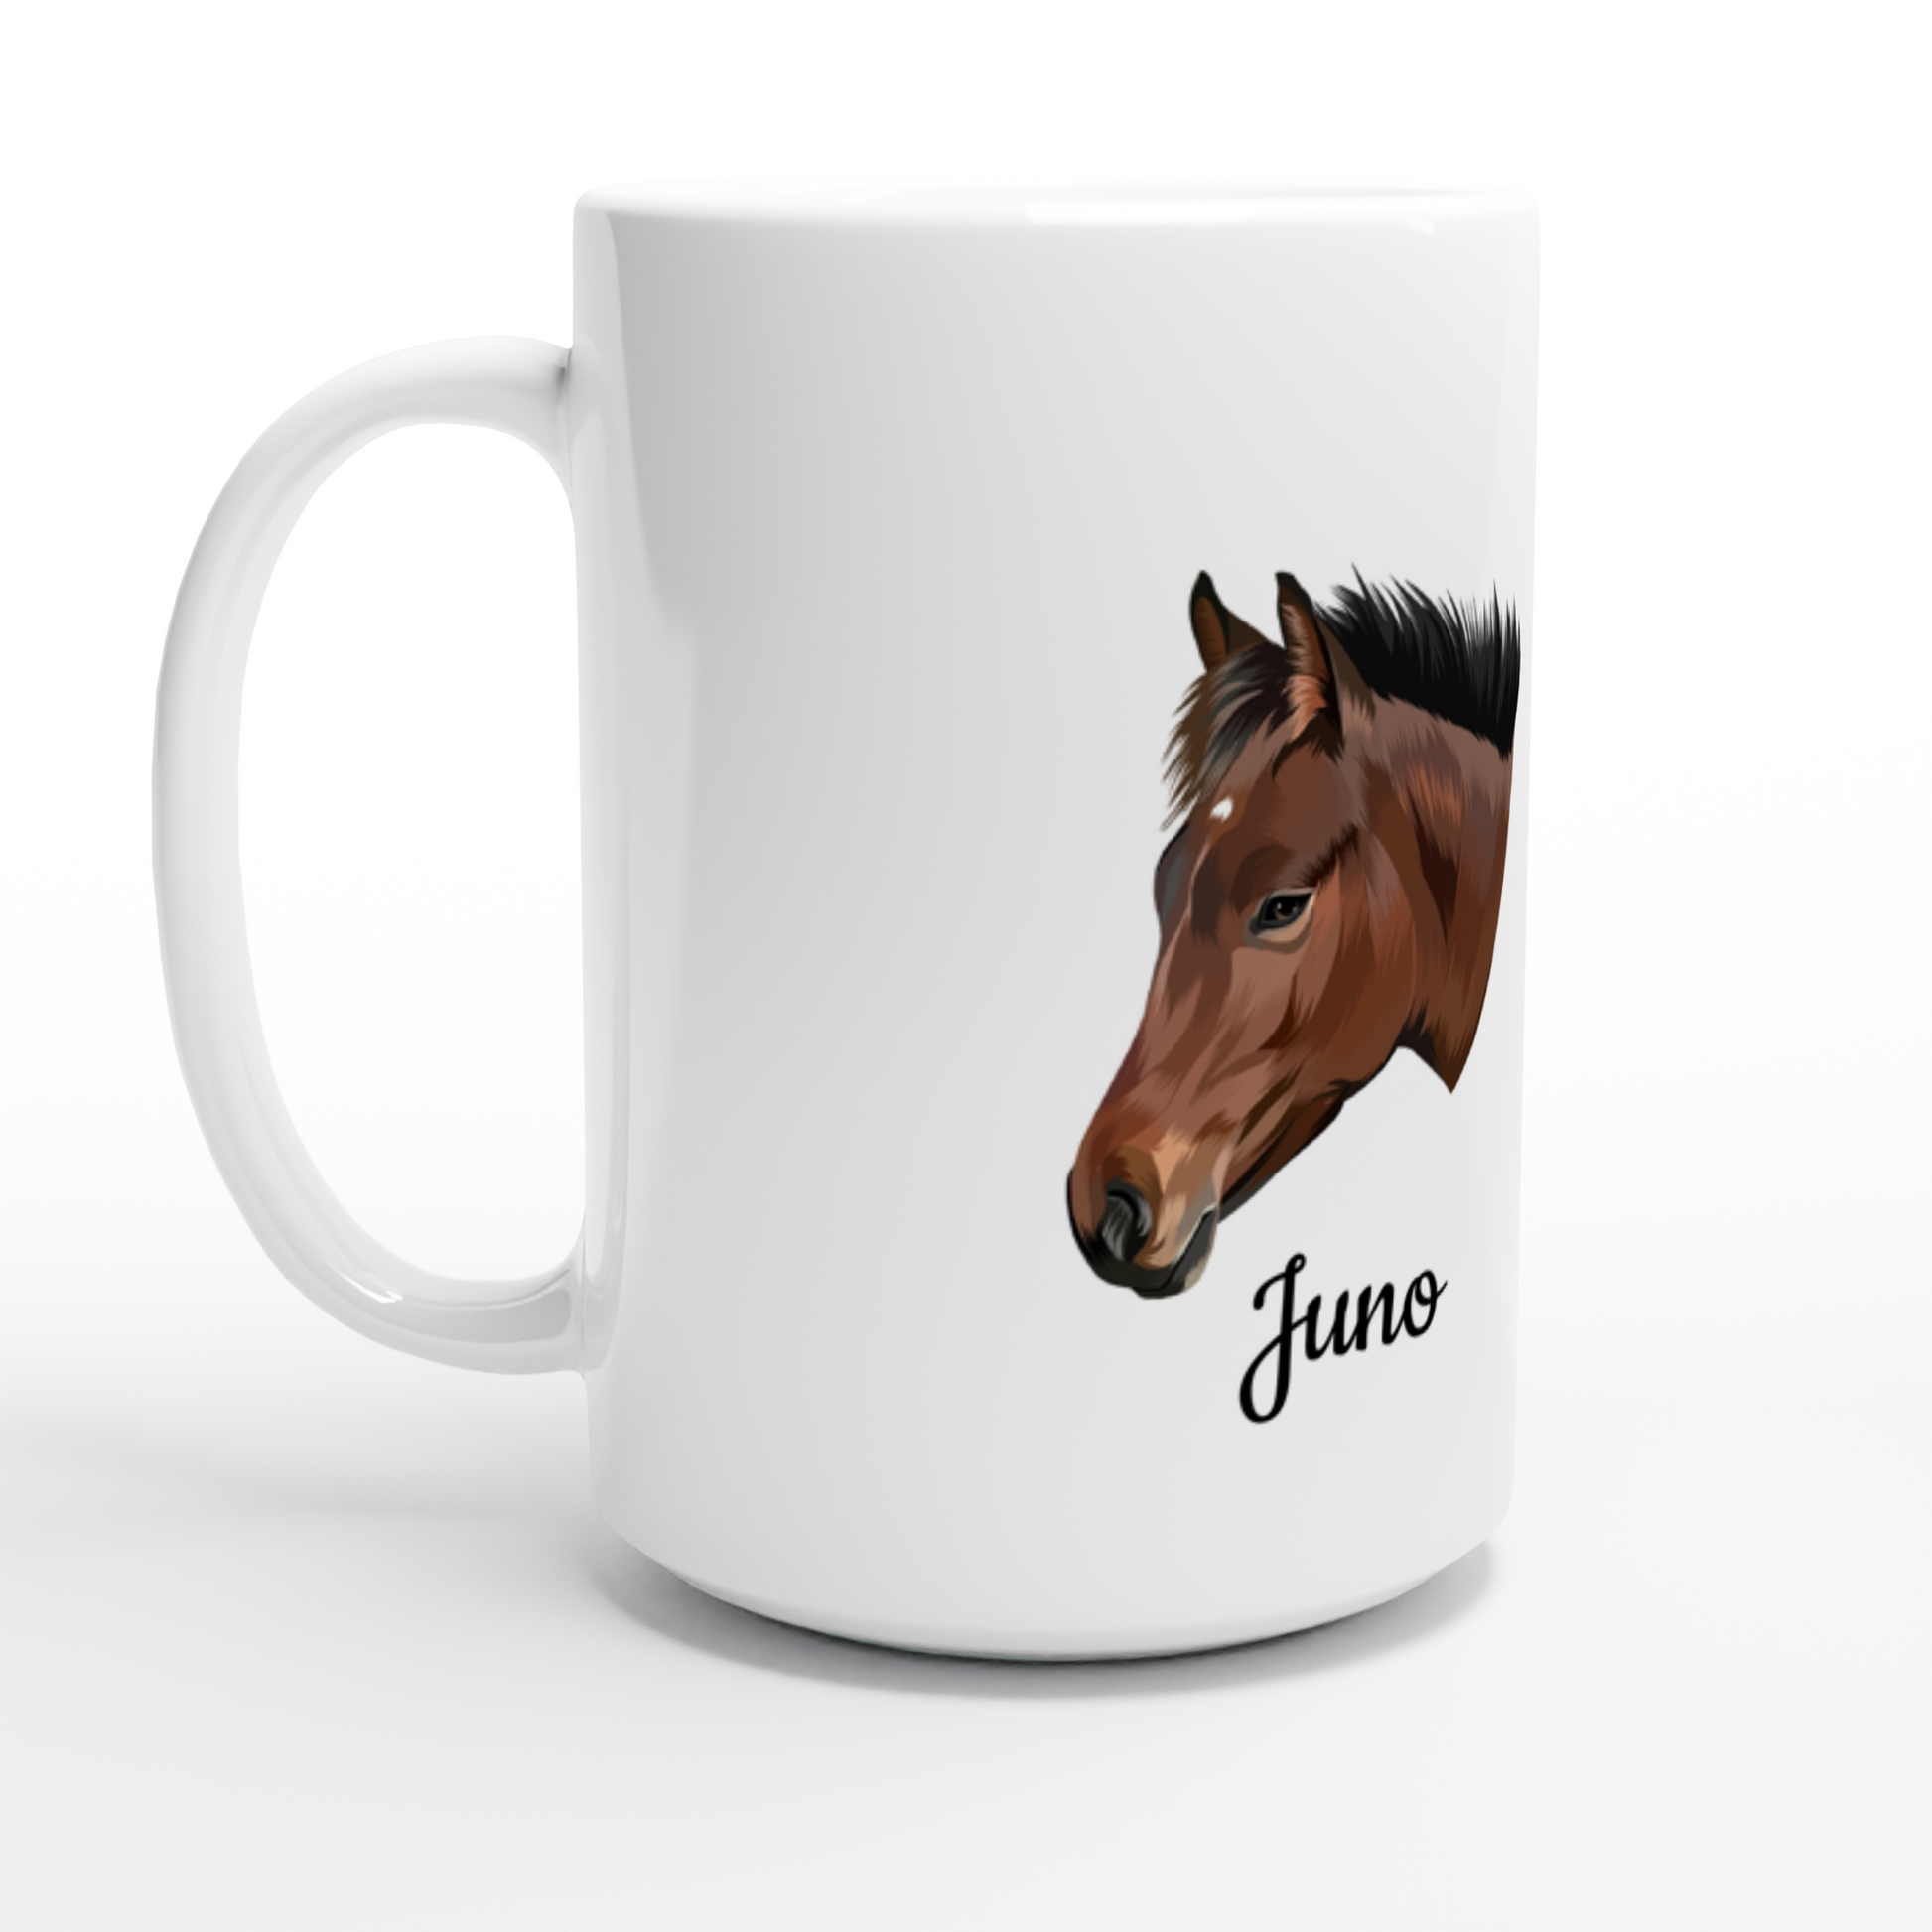 Hand Drawn Horse || 15oz Ceramic Mug - TruPaint - Personalized; Hand drawn & personalized with your horse